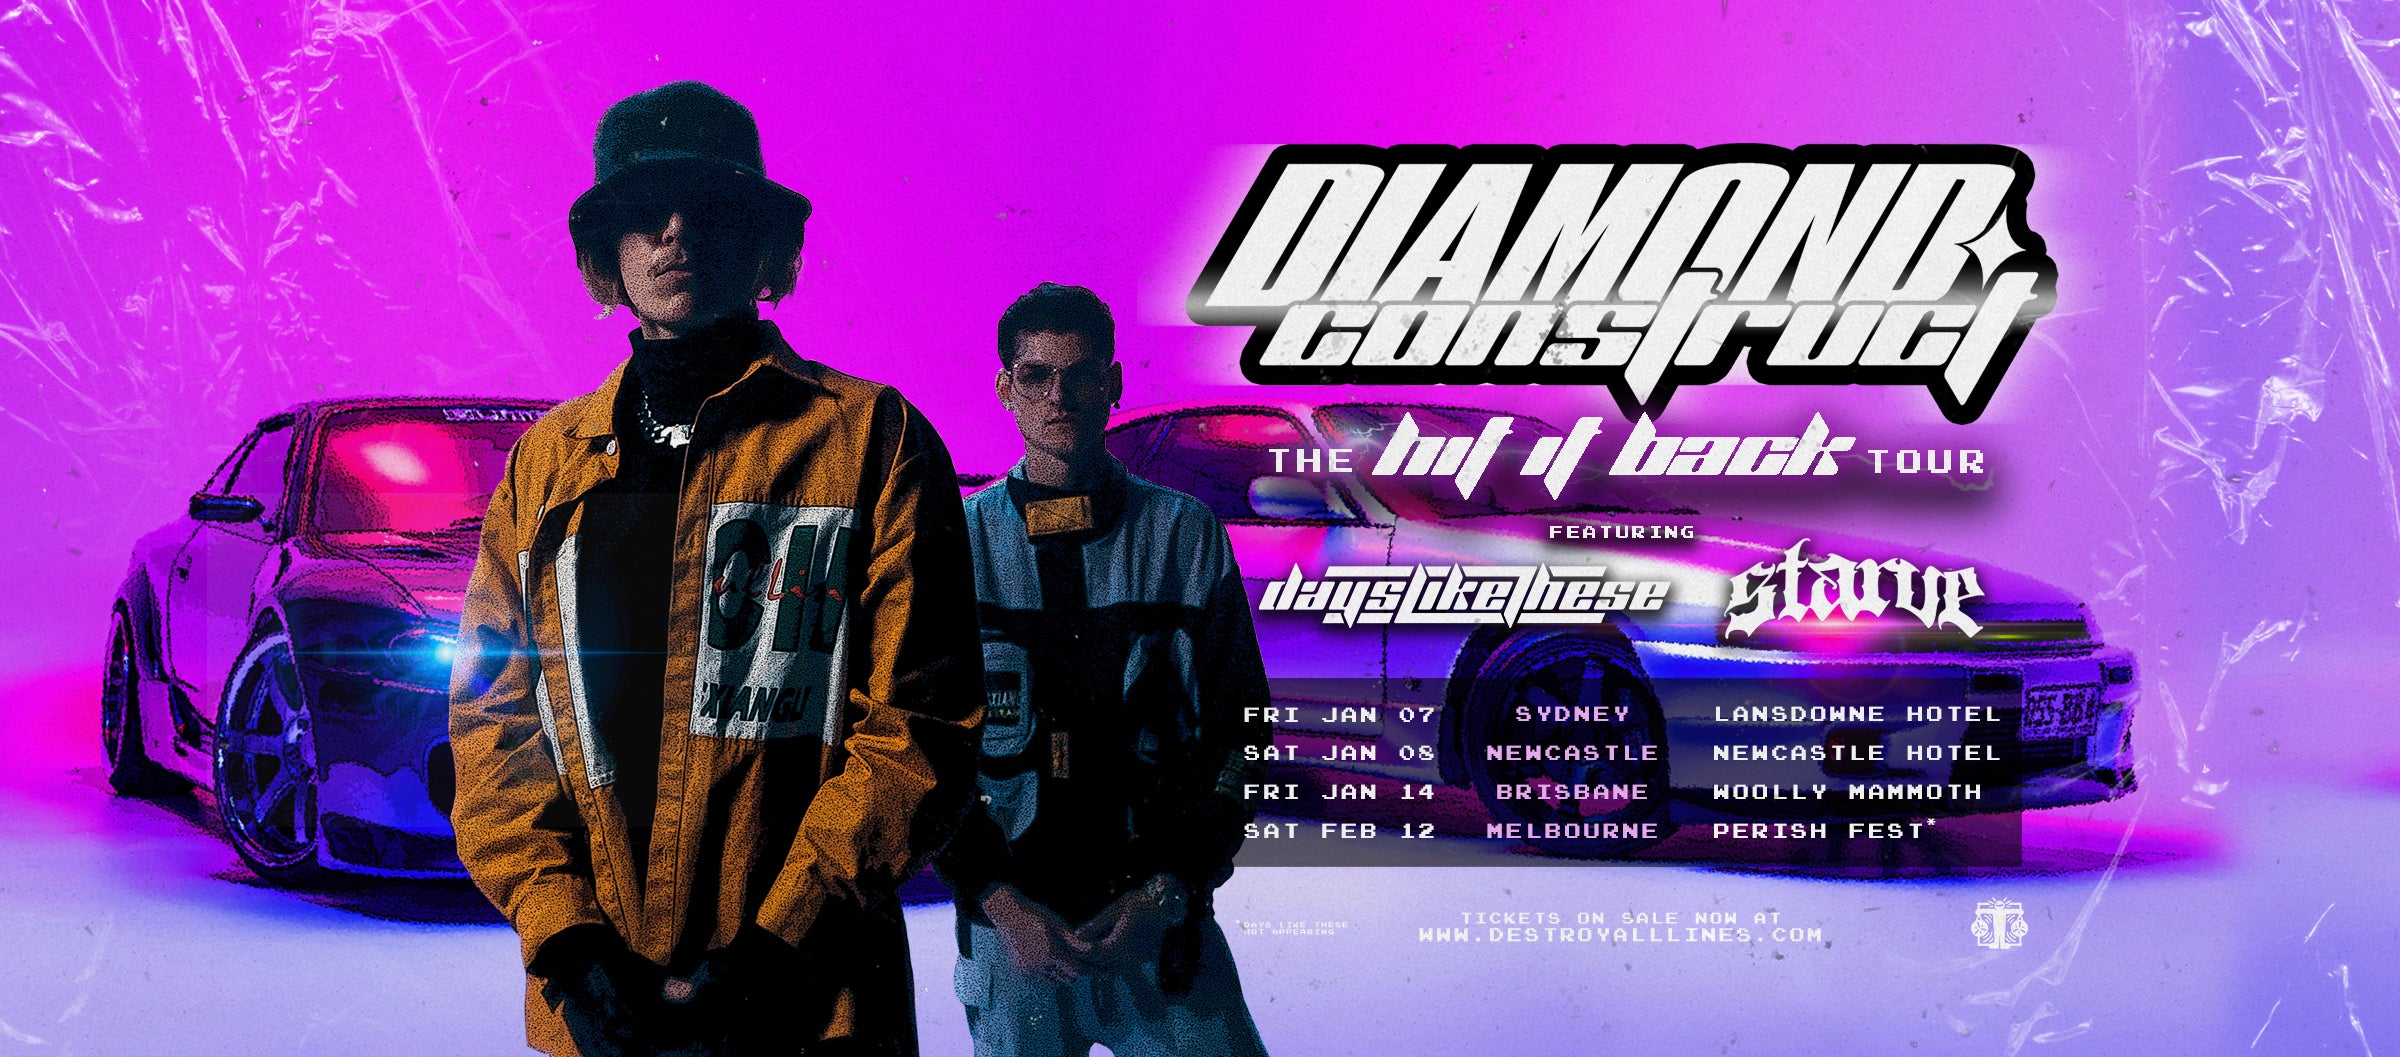 Diamond Construct "Hit It Back' Aus Tour